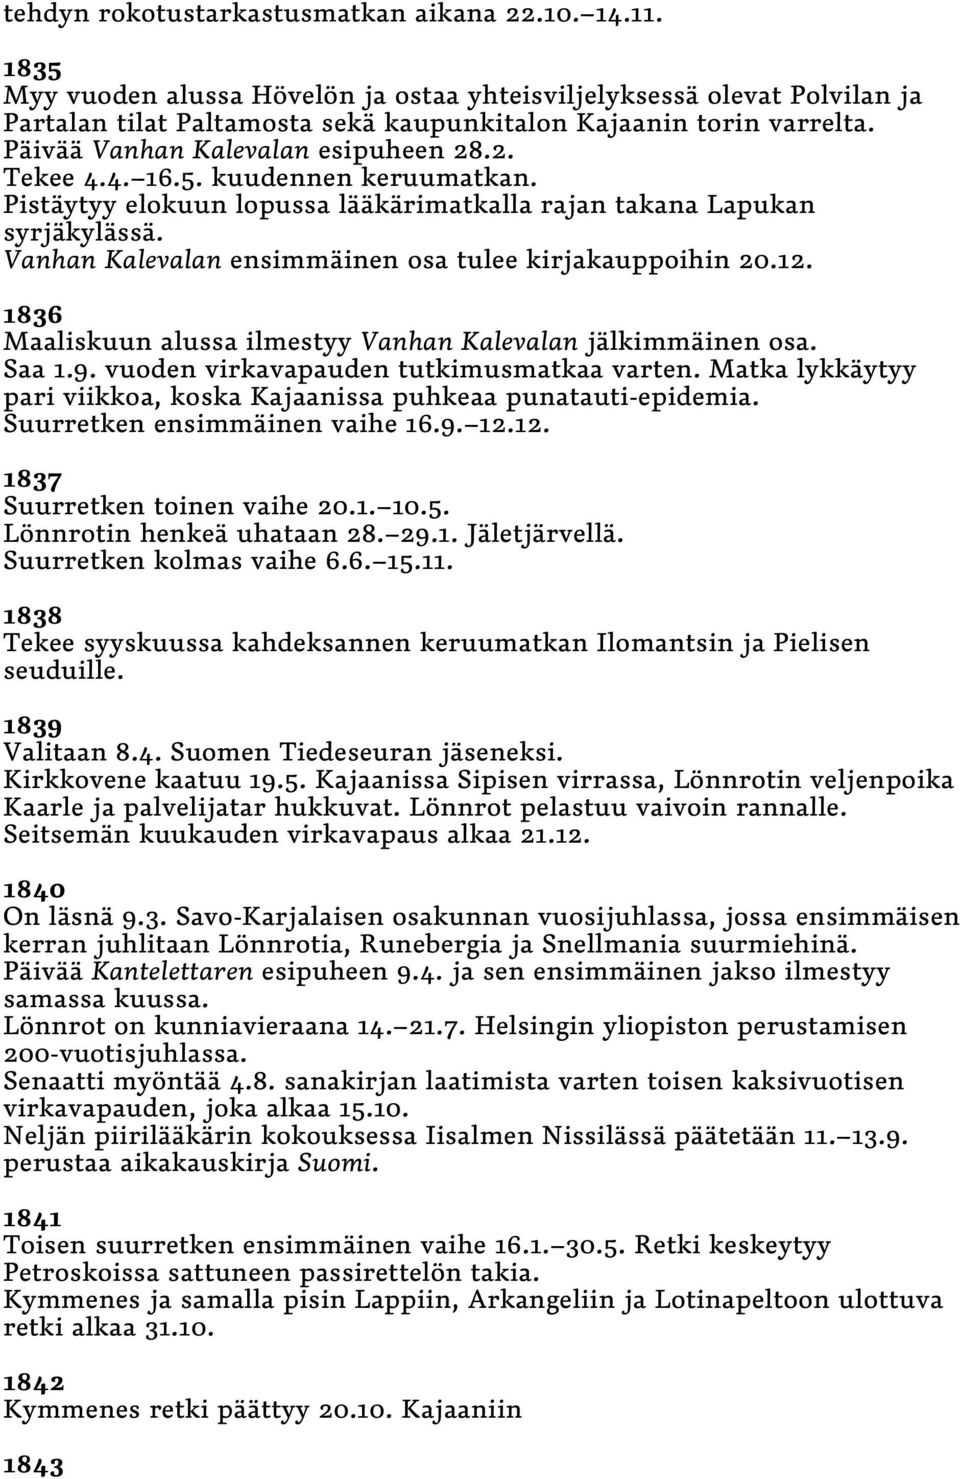 Vanhan Kalevalan ensimmäinen osa tulee kirjakauppoihin 20.12. 1836 Maaliskuun alussa ilmestyy Vanhan Kalevalan jälkimmäinen osa. Saa 1.9. vuoden virkavapauden tutkimusmatkaa varten.